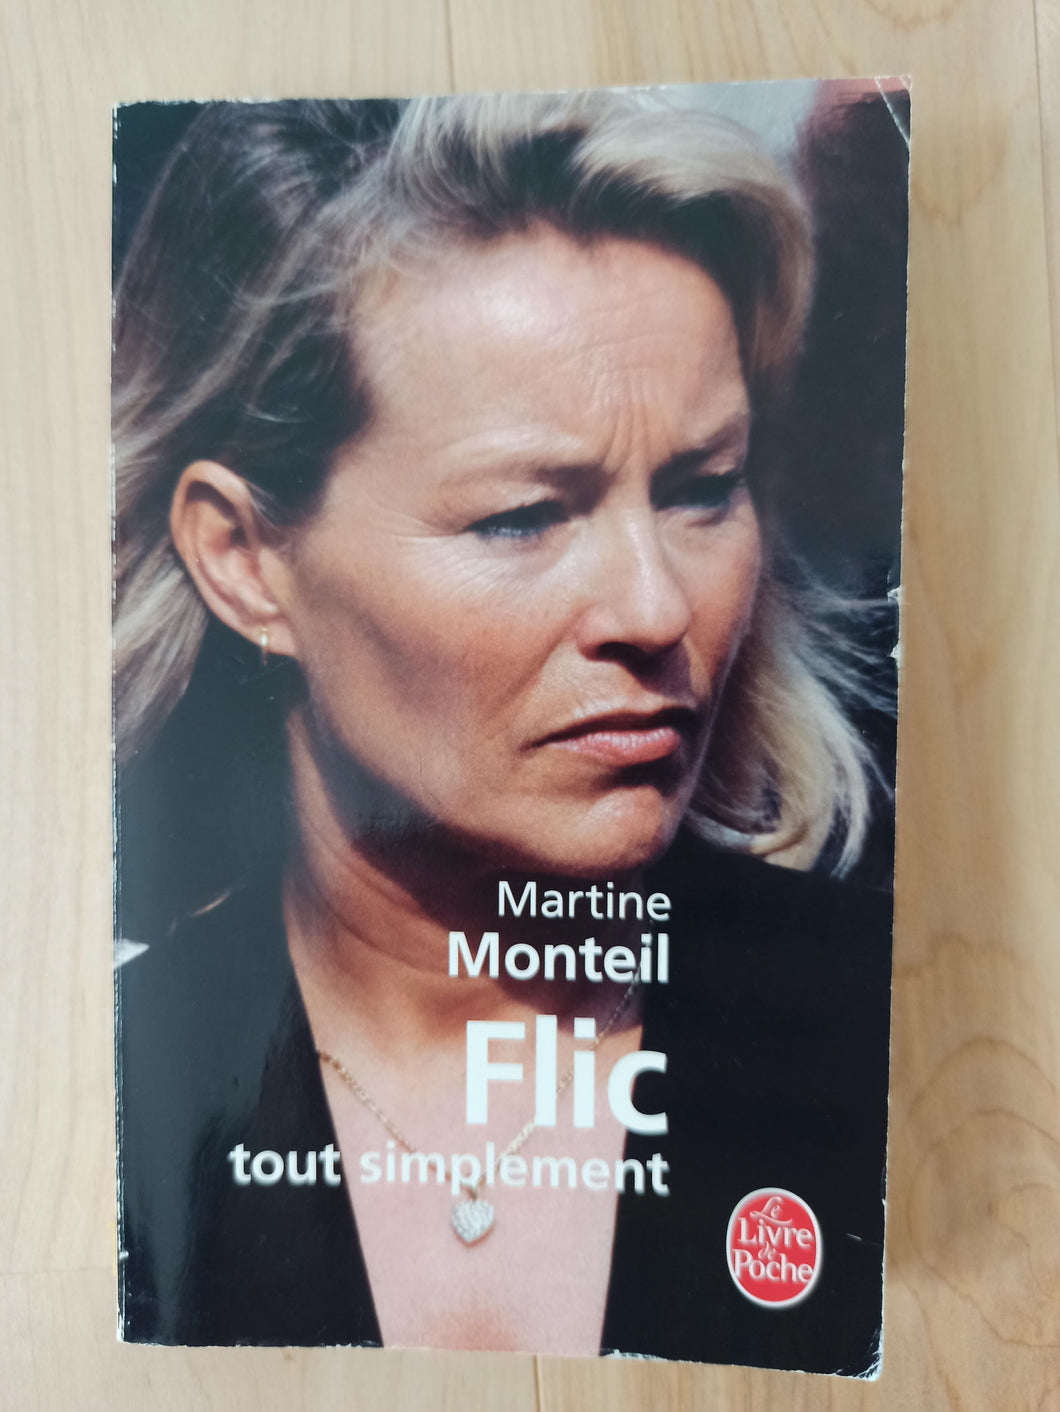 Filc Tout Simplement : Martine Monteil